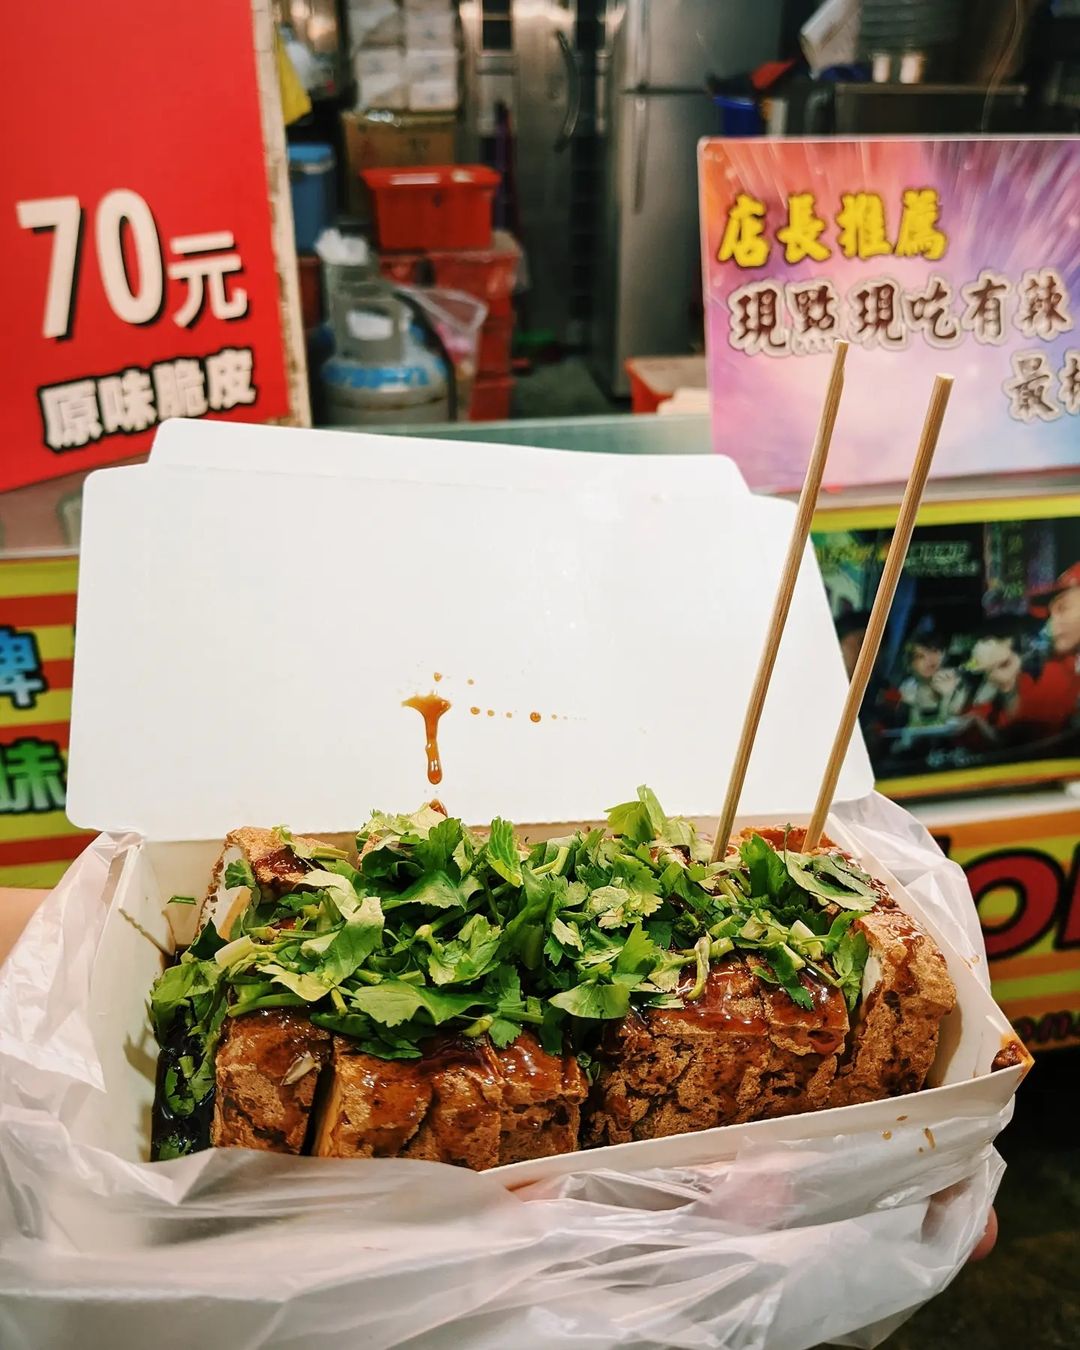 Món ăn vặt phổ biến ở Trung Quốc, Đài Loan... Ảnh: @jaini.on.a.journey.